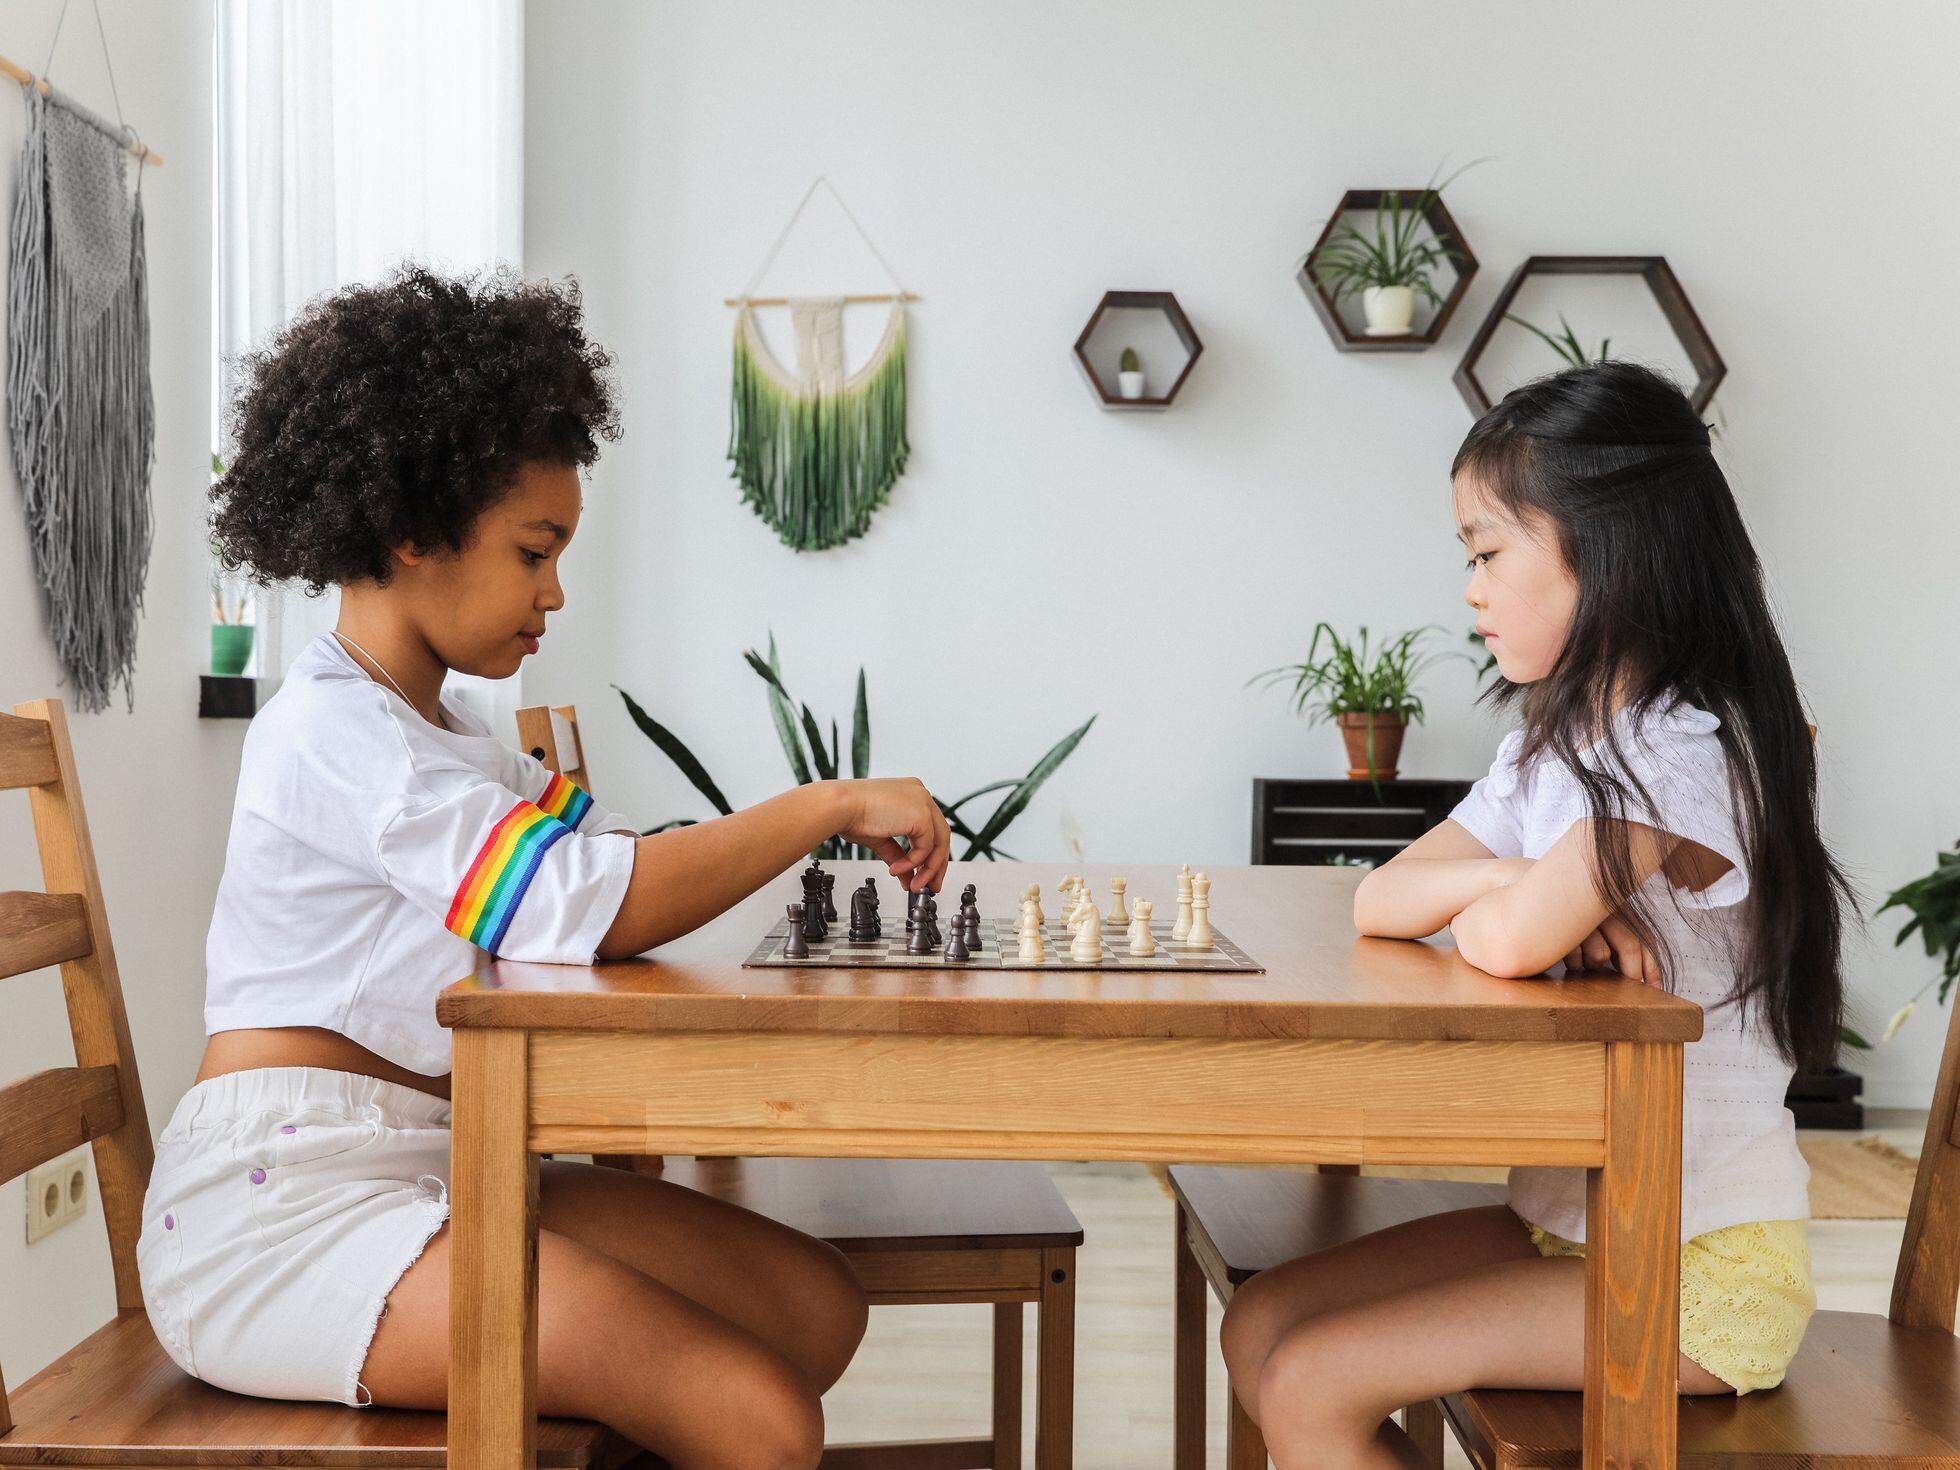 Por qué no hay que enseñarles ajedrez a los niños: es una droga